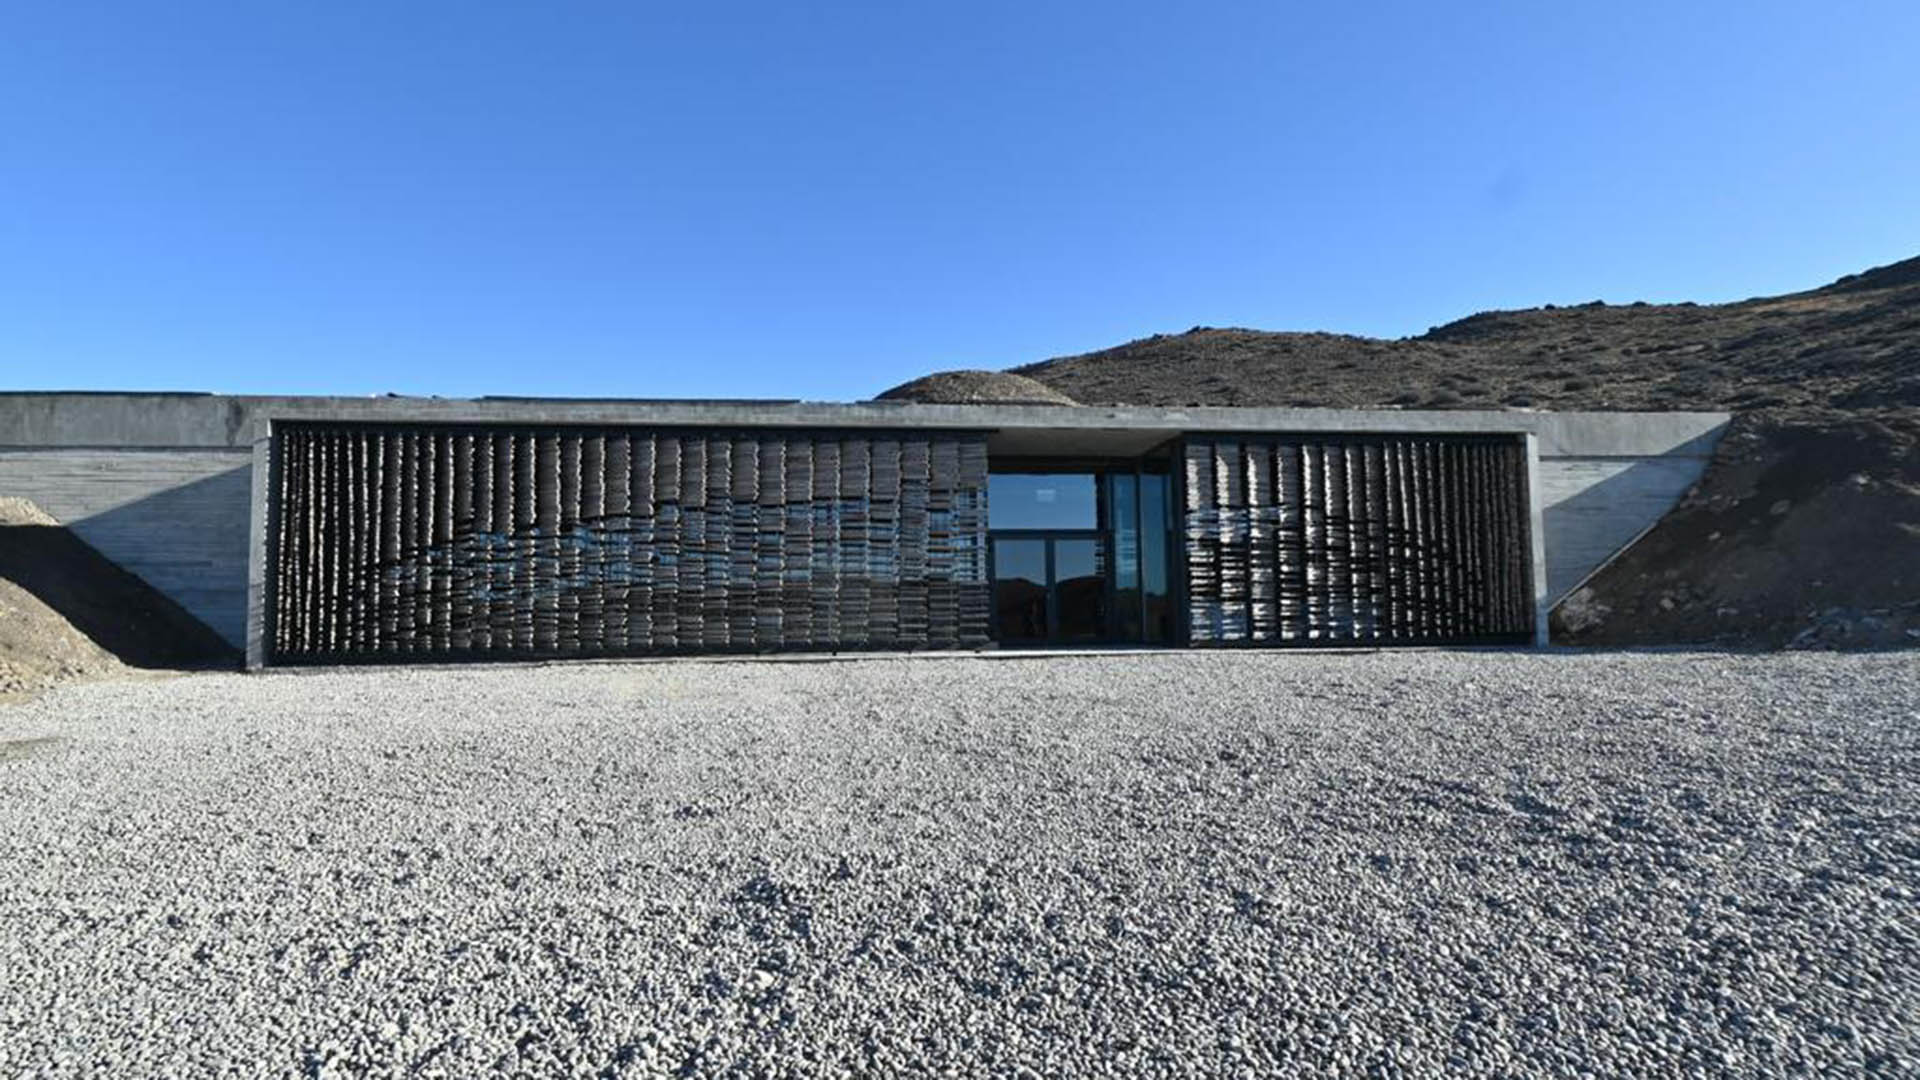 El Planetario donado por Elsa está construido en plena estepa patagónica